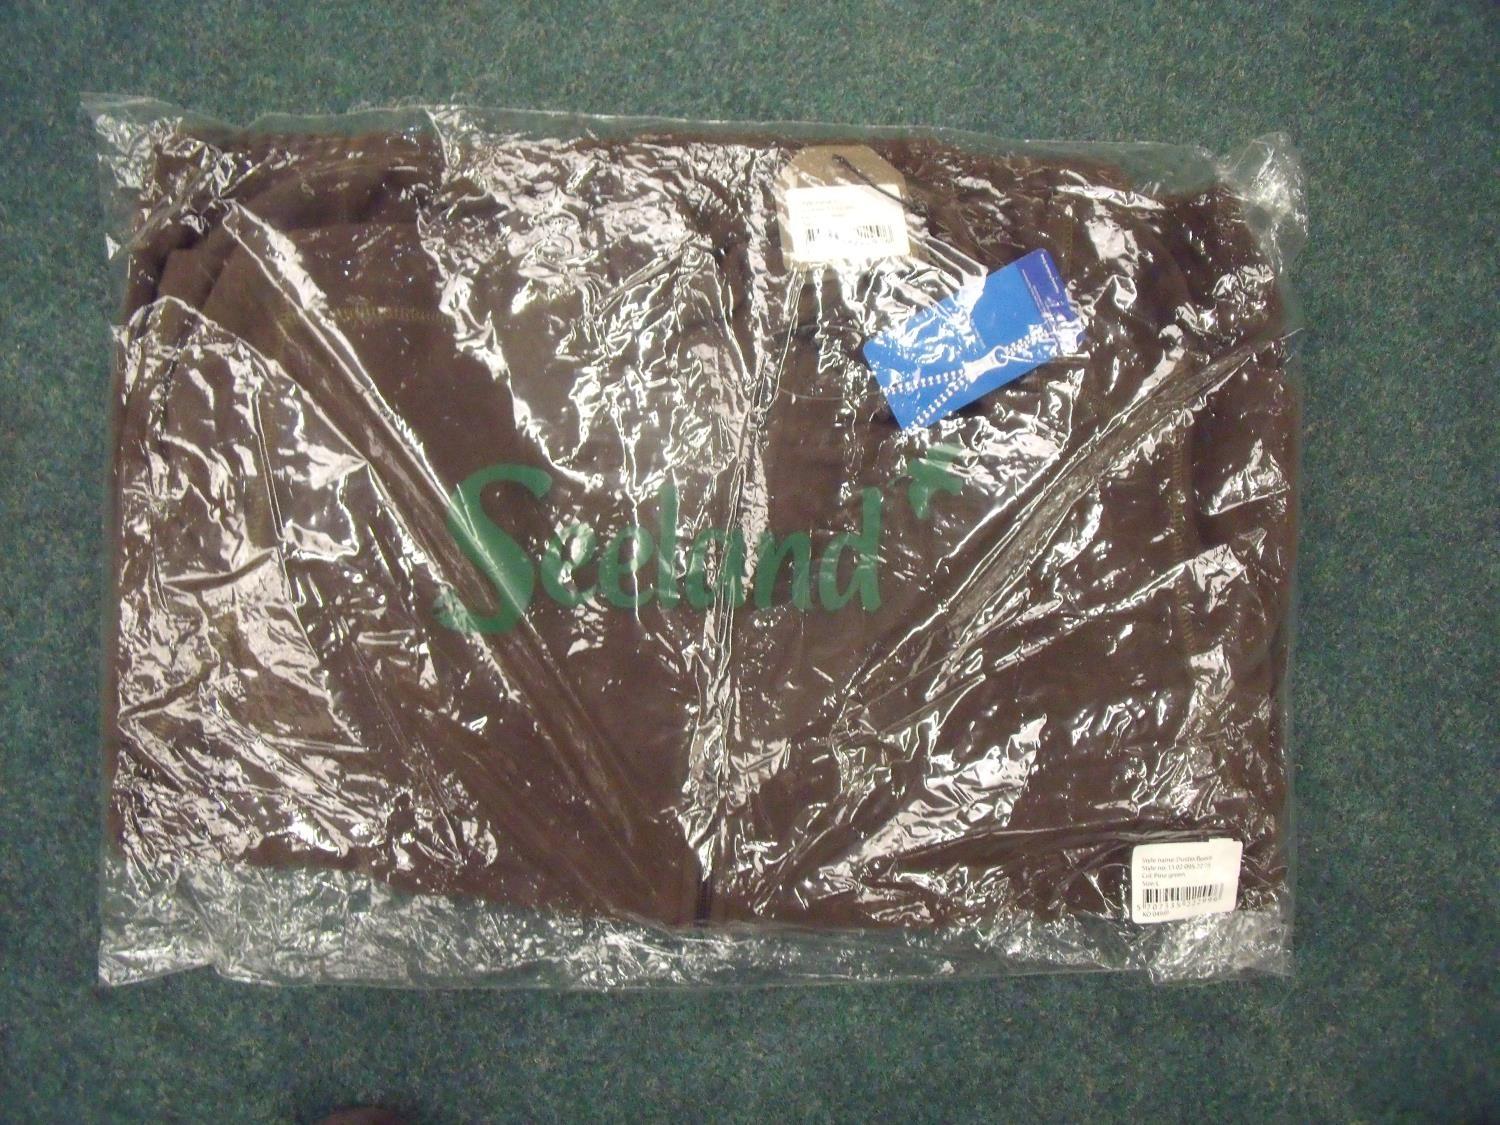 Brand new ex-shop stock Seeland Dustin fleece (size XL)